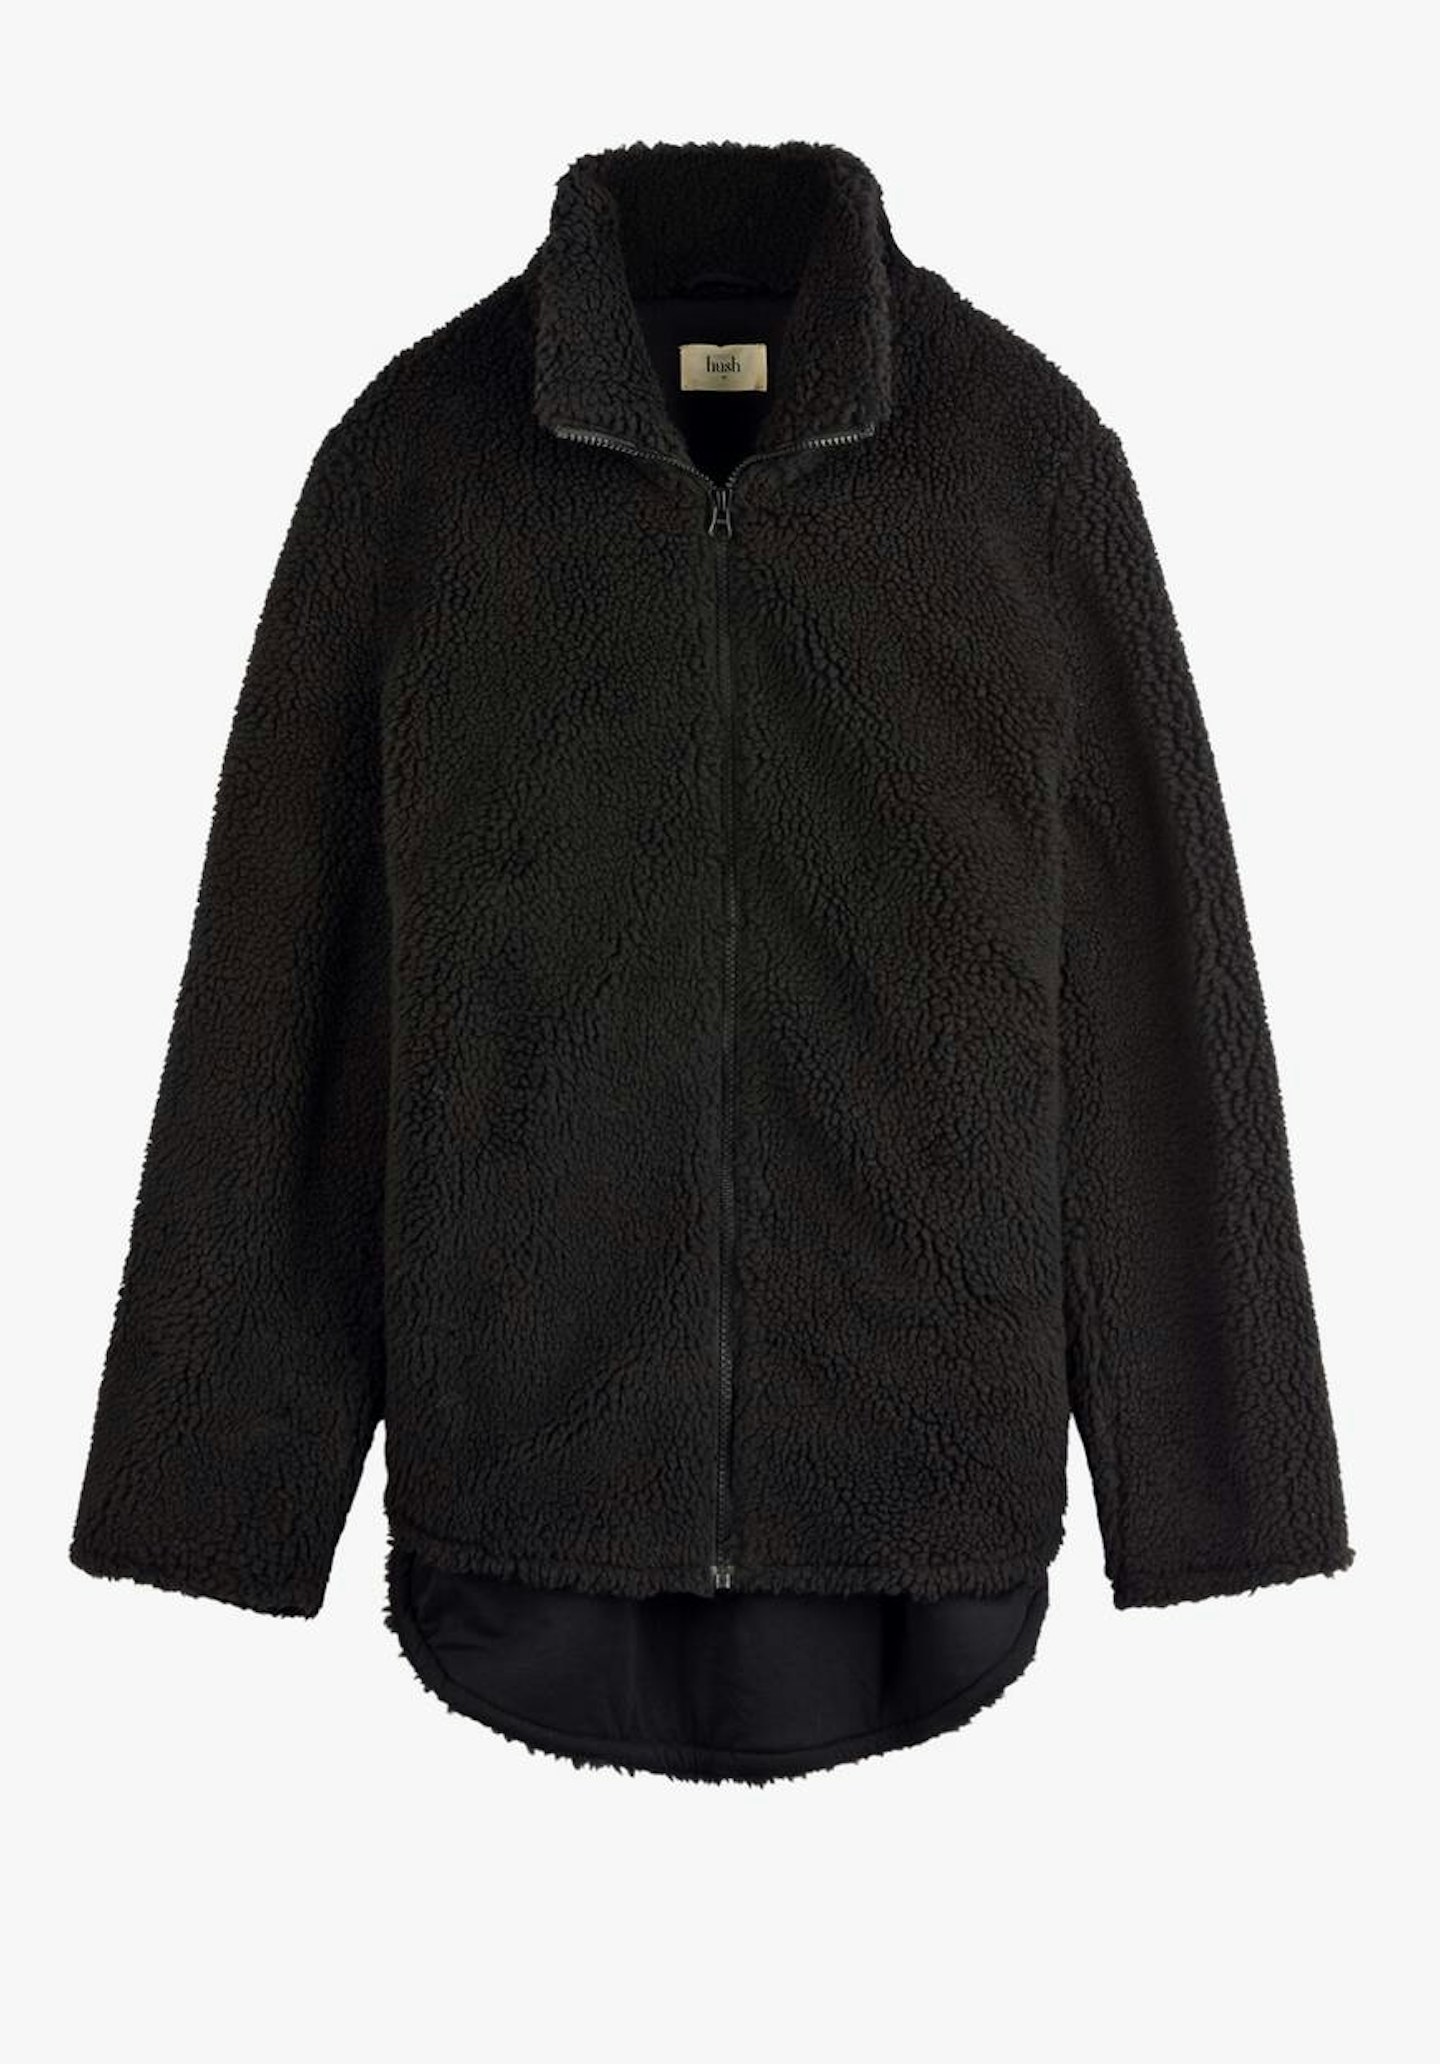 Hush, Maren Fleece Zip Jacket, £79